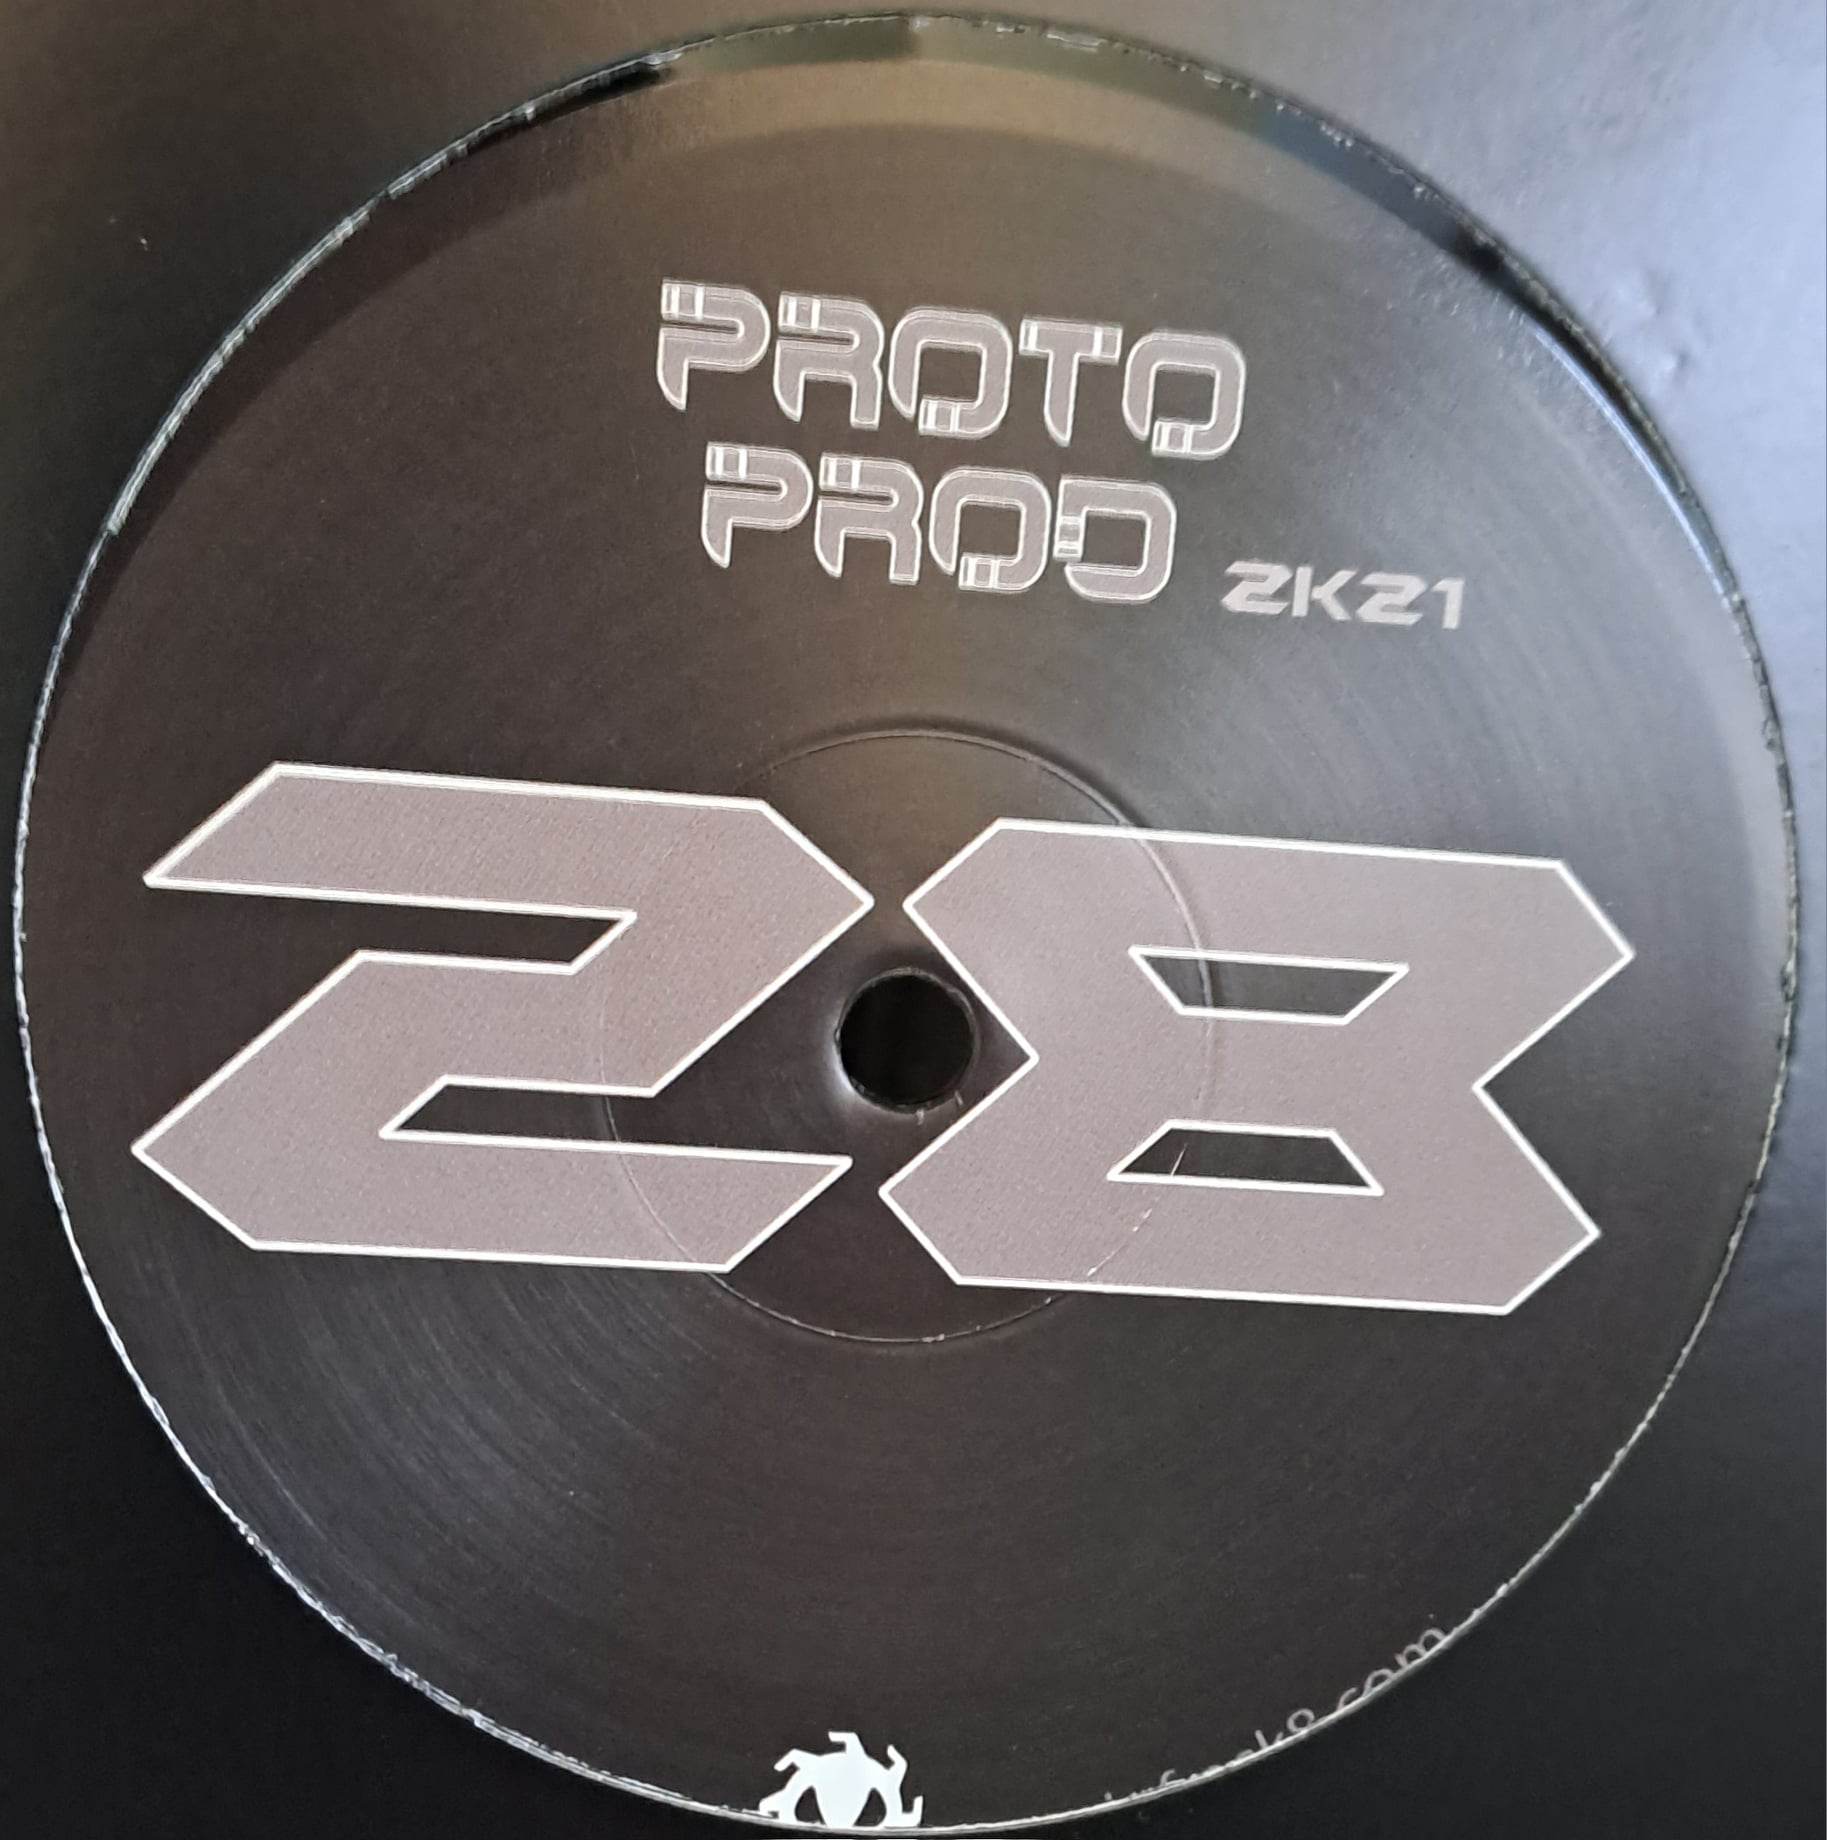 Protoprod 28 RP (toute dernière copie en stock) - vinyle freetekno